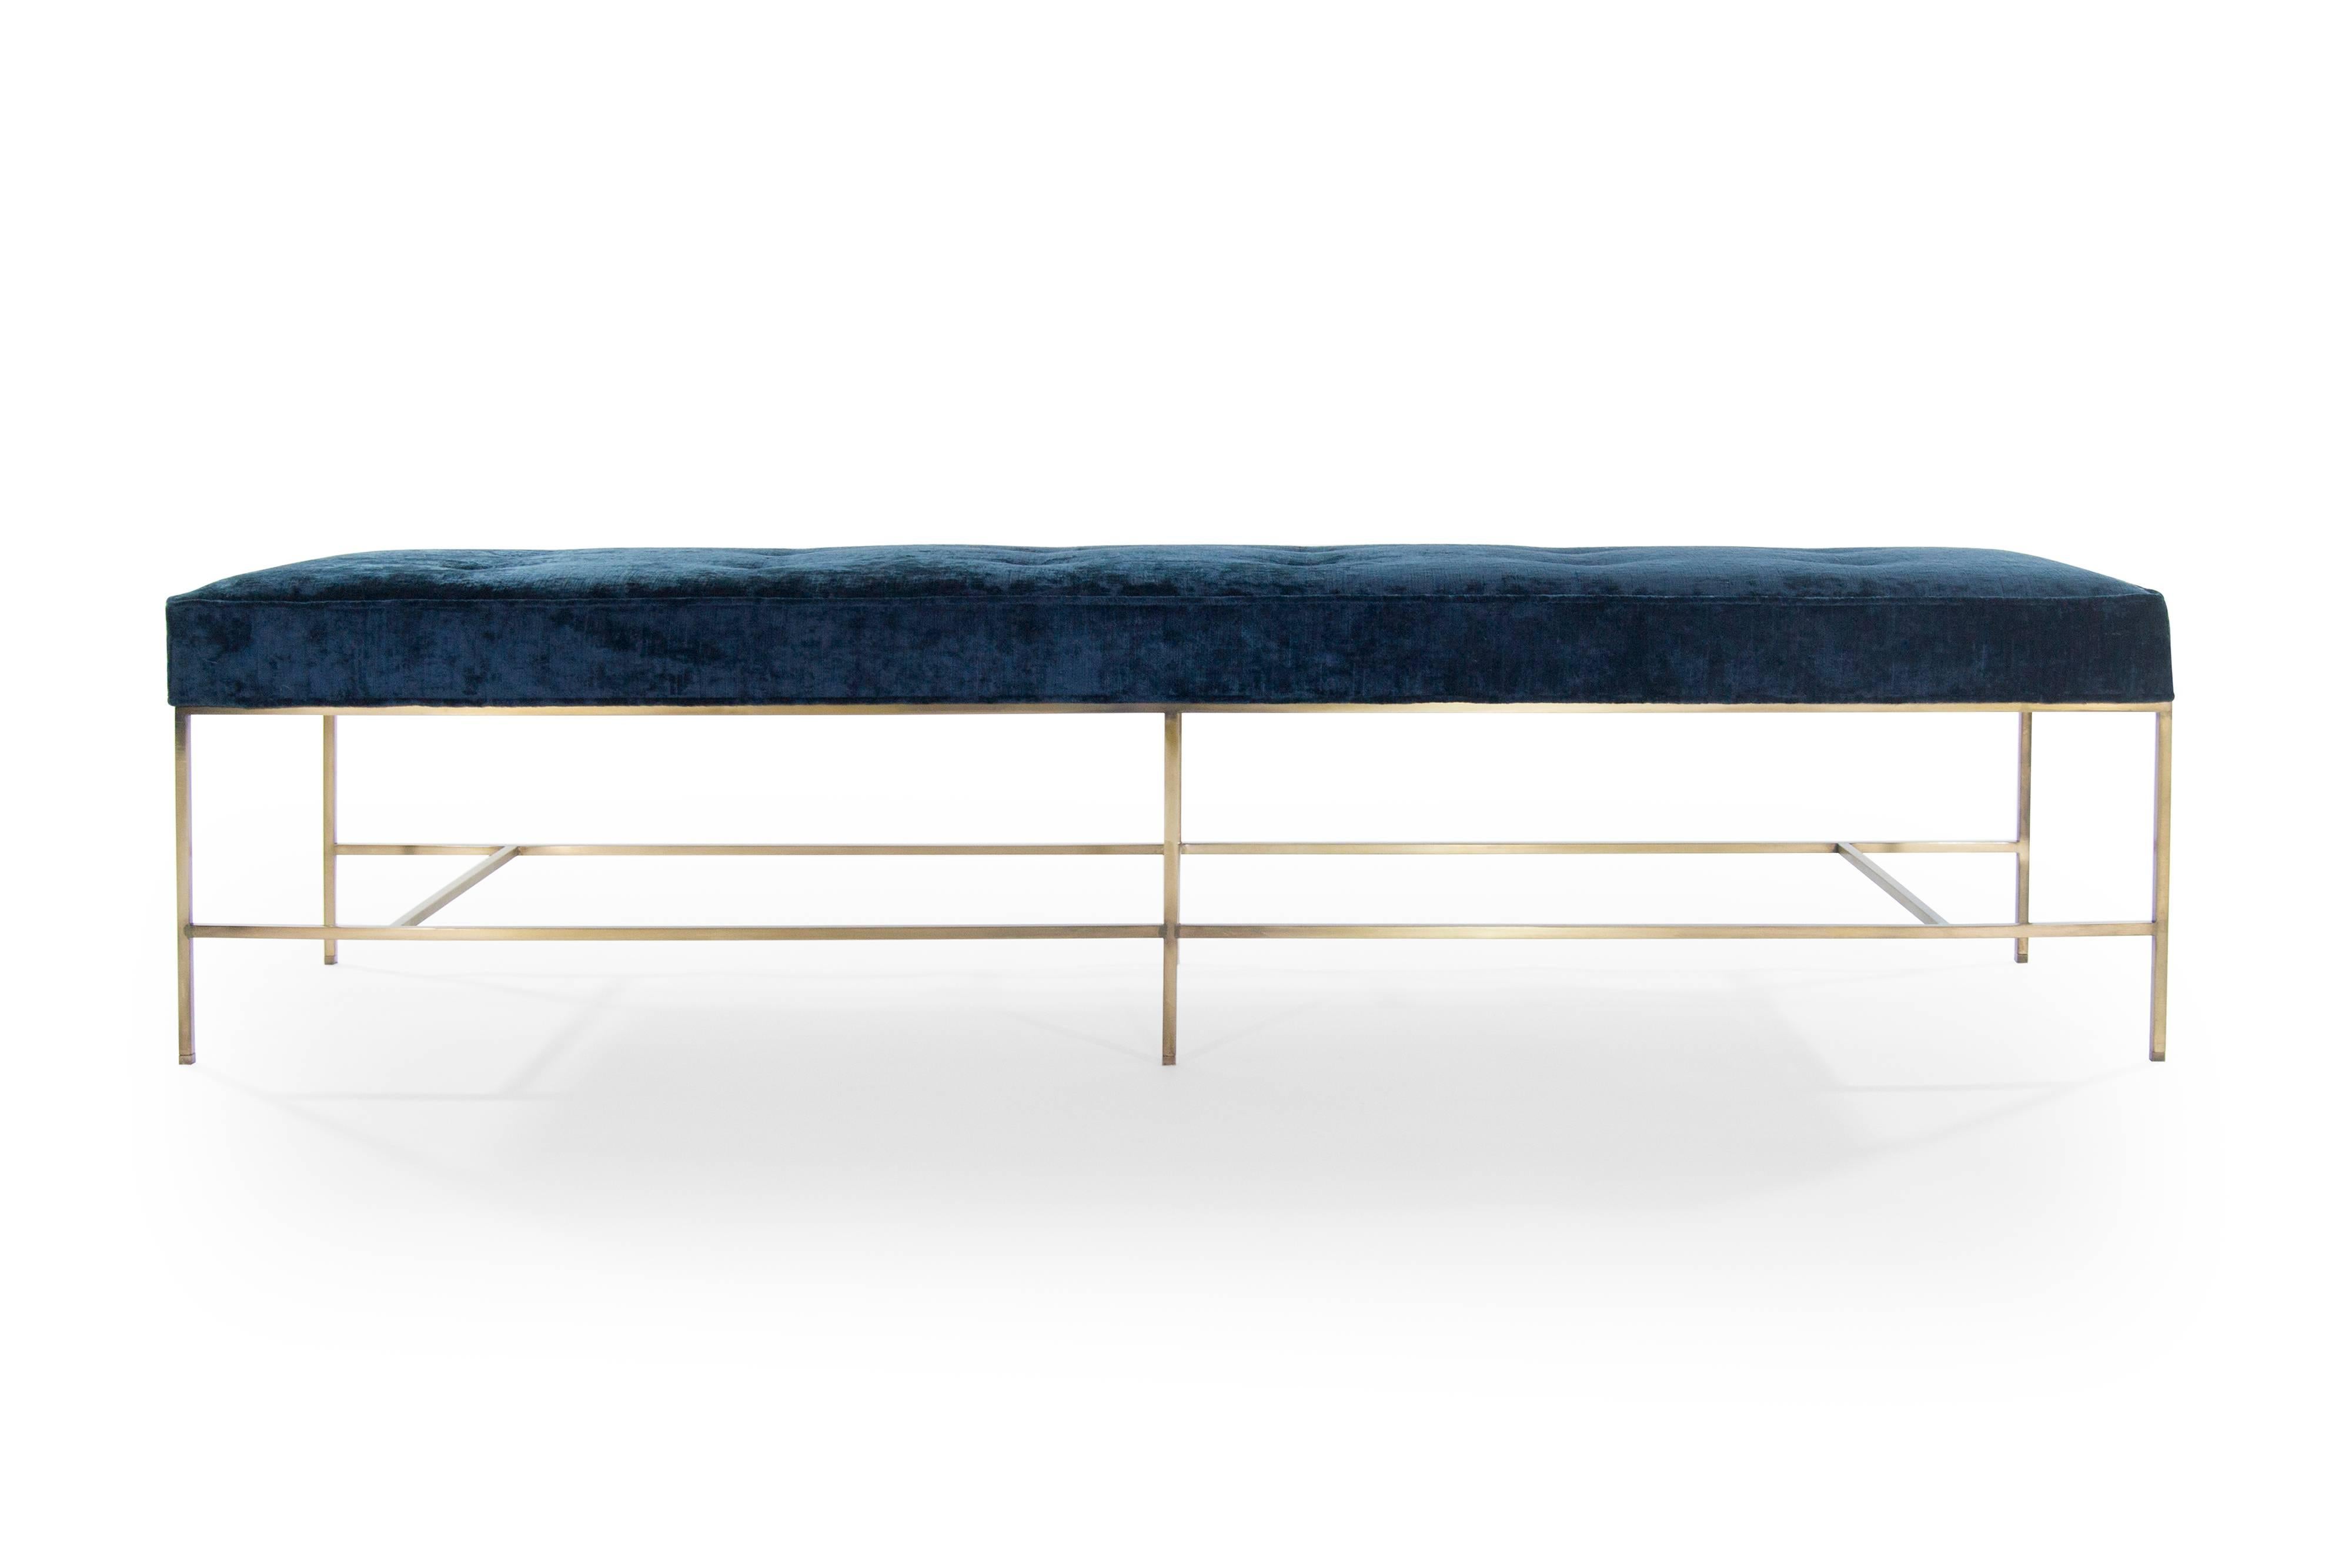 Die Architectural Bench von Carlos Solano für Stamford Modern ist eine elegante und anspruchsvolle Ergänzung für jeden modernen Raum. Diese sorgfältig aus einer Ganzmetallkonstruktion gefertigte Bank verkörpert die Essenz des minimalistischen